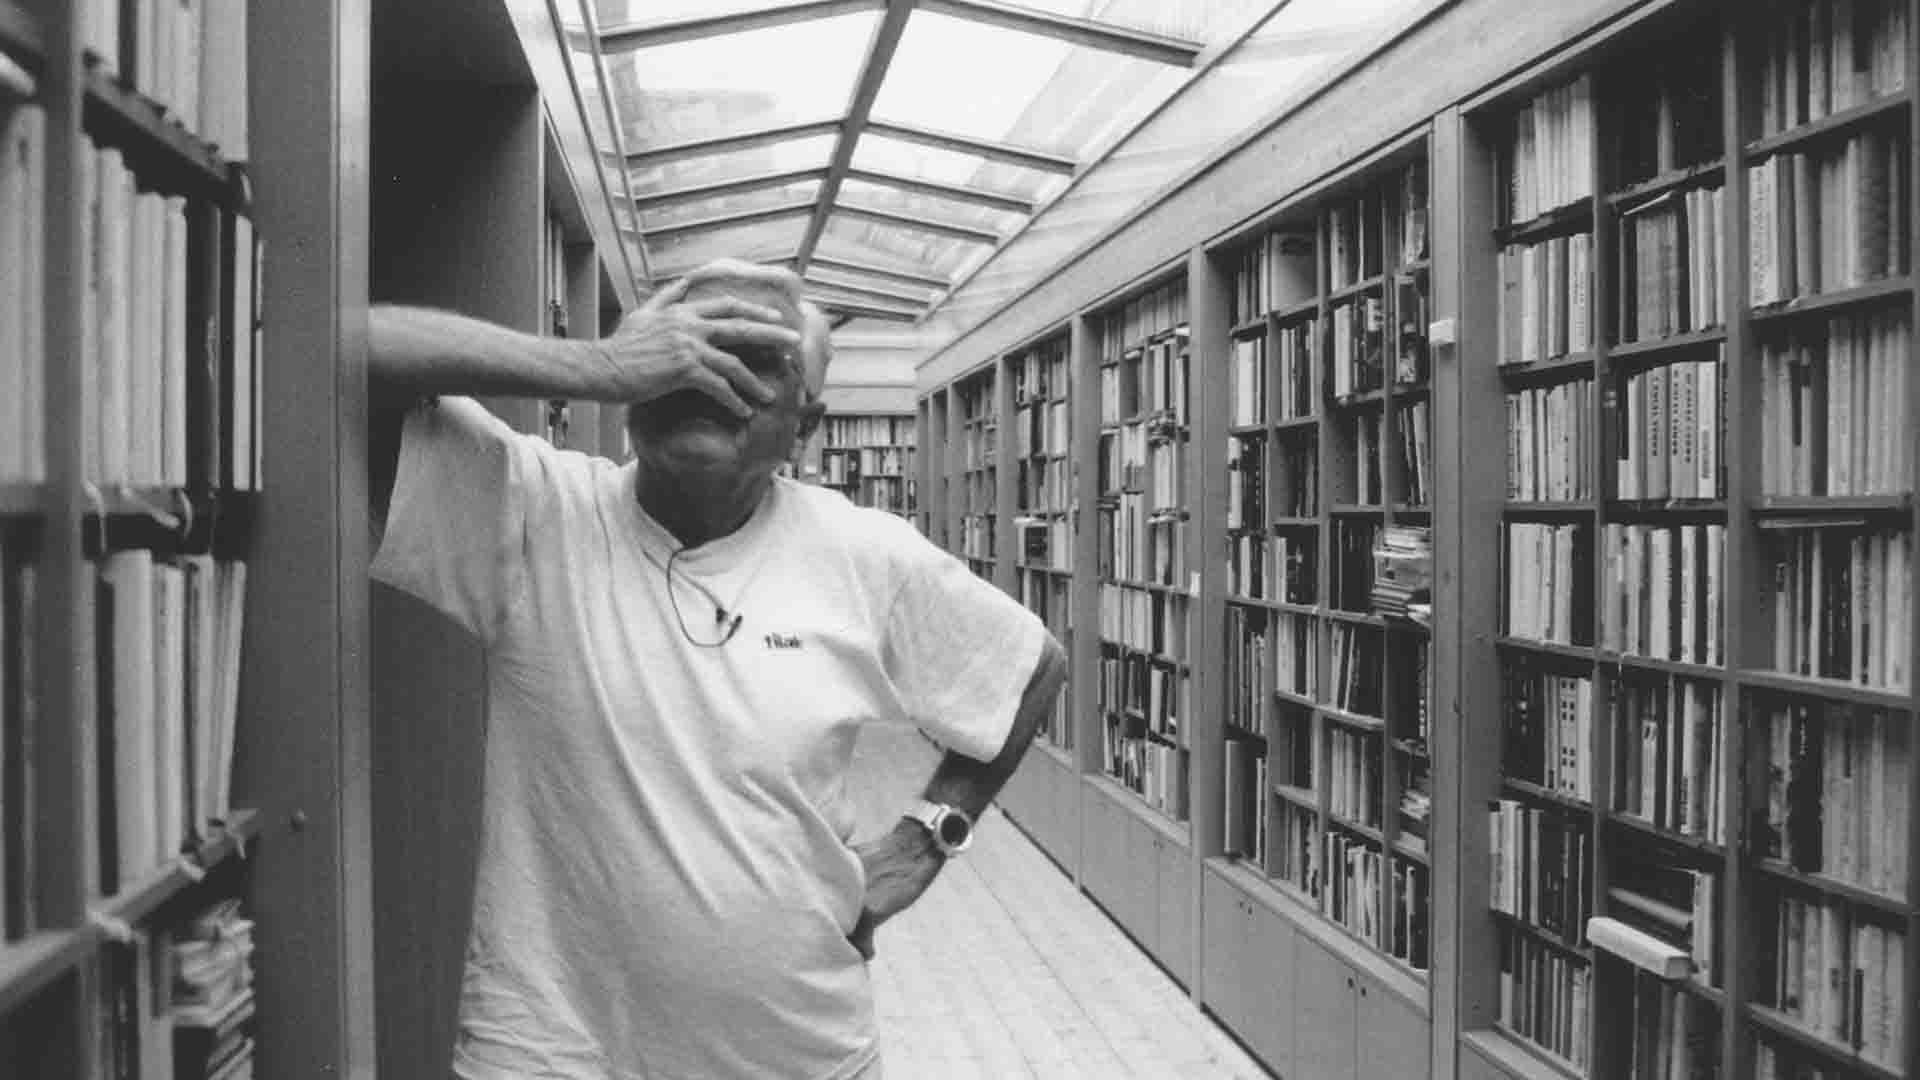 مردی در کتابخانه دستش را روی صورتش گذاشته است در فیلم CzechMate: In Search of Jiří Menzel